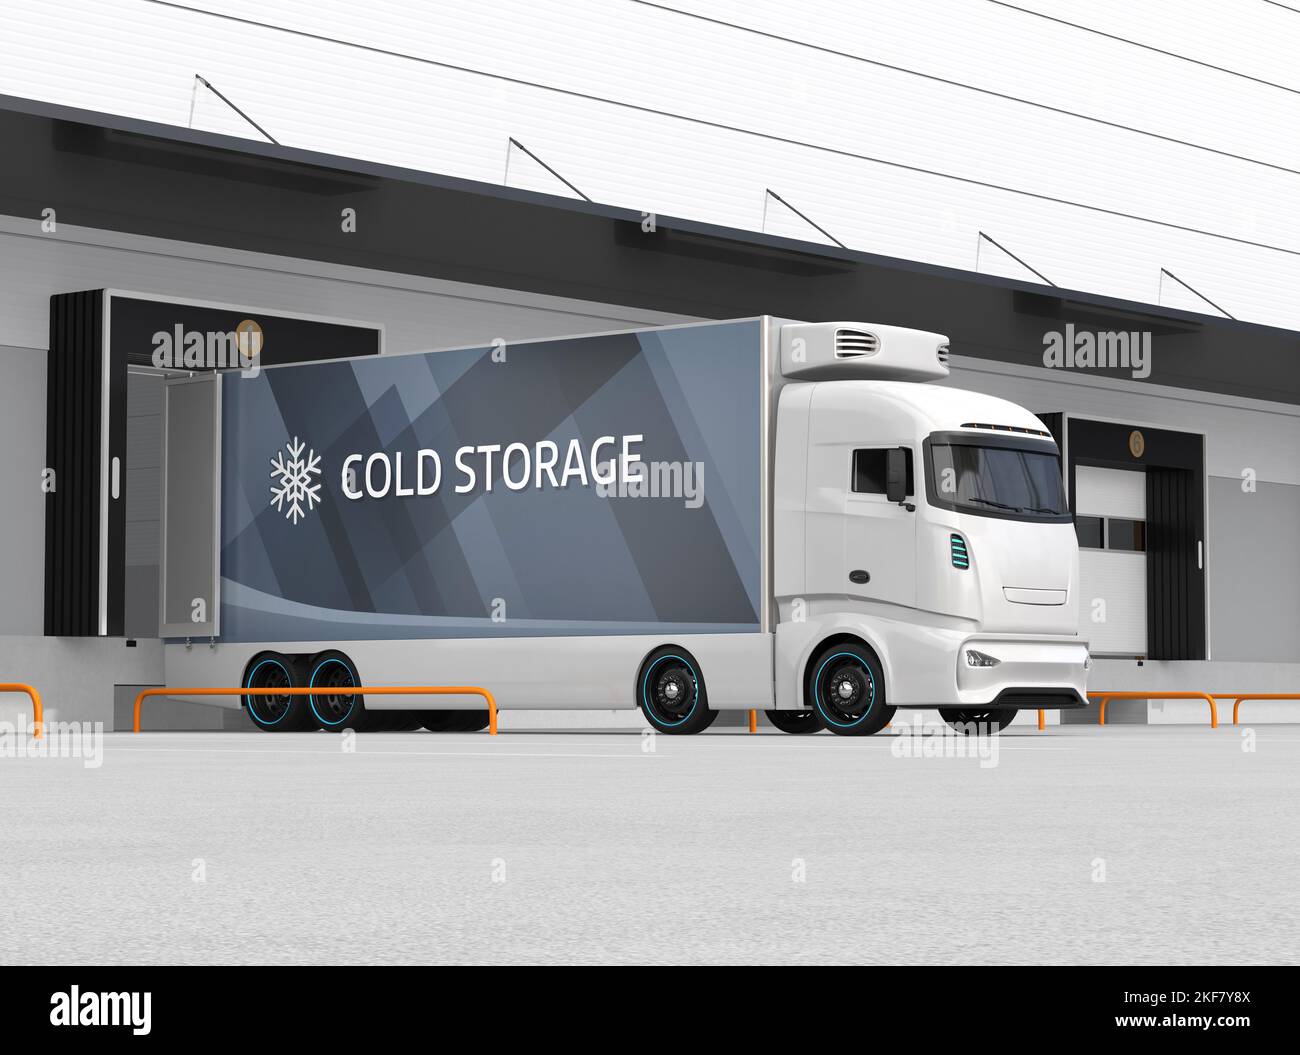 Camion elettrico con container e parcheggio per rimorchio singolo nel centro logistico. Concetto di catena del freddo. Immagine di rendering 3D. Foto Stock